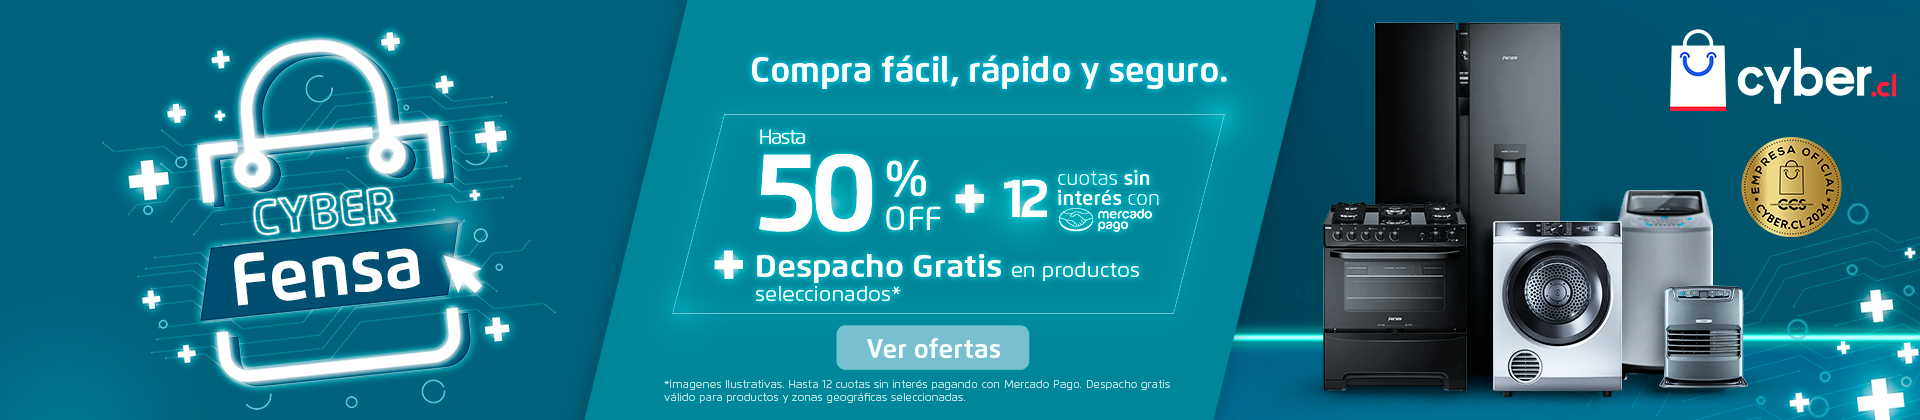 Cyber Fensa - Hasta 50% Off + 12 cuotas sin interés + Despacho Gratis en productos seleccionados.